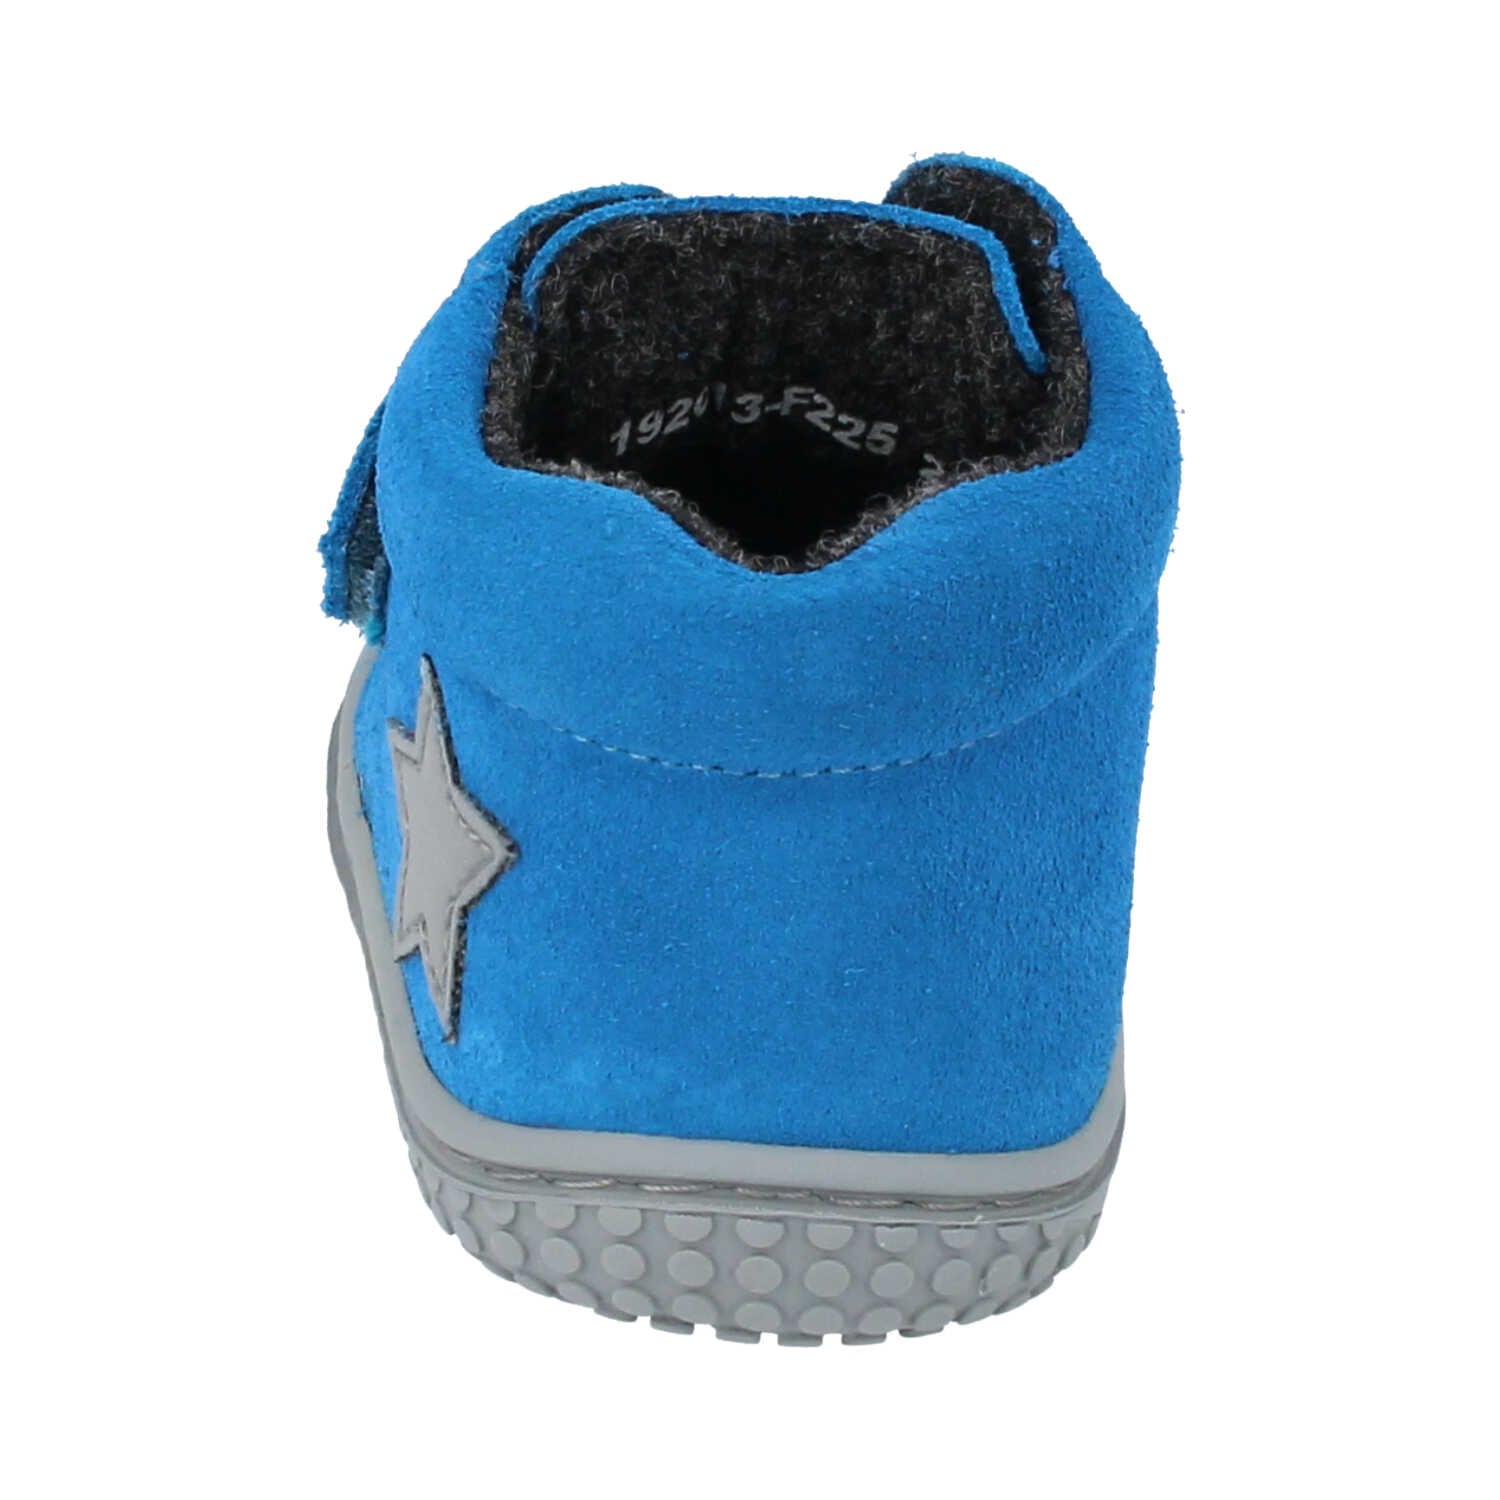 Filii Chameleon "Medium" barfods støvle til børn i farven electric blue fleece, bagfra